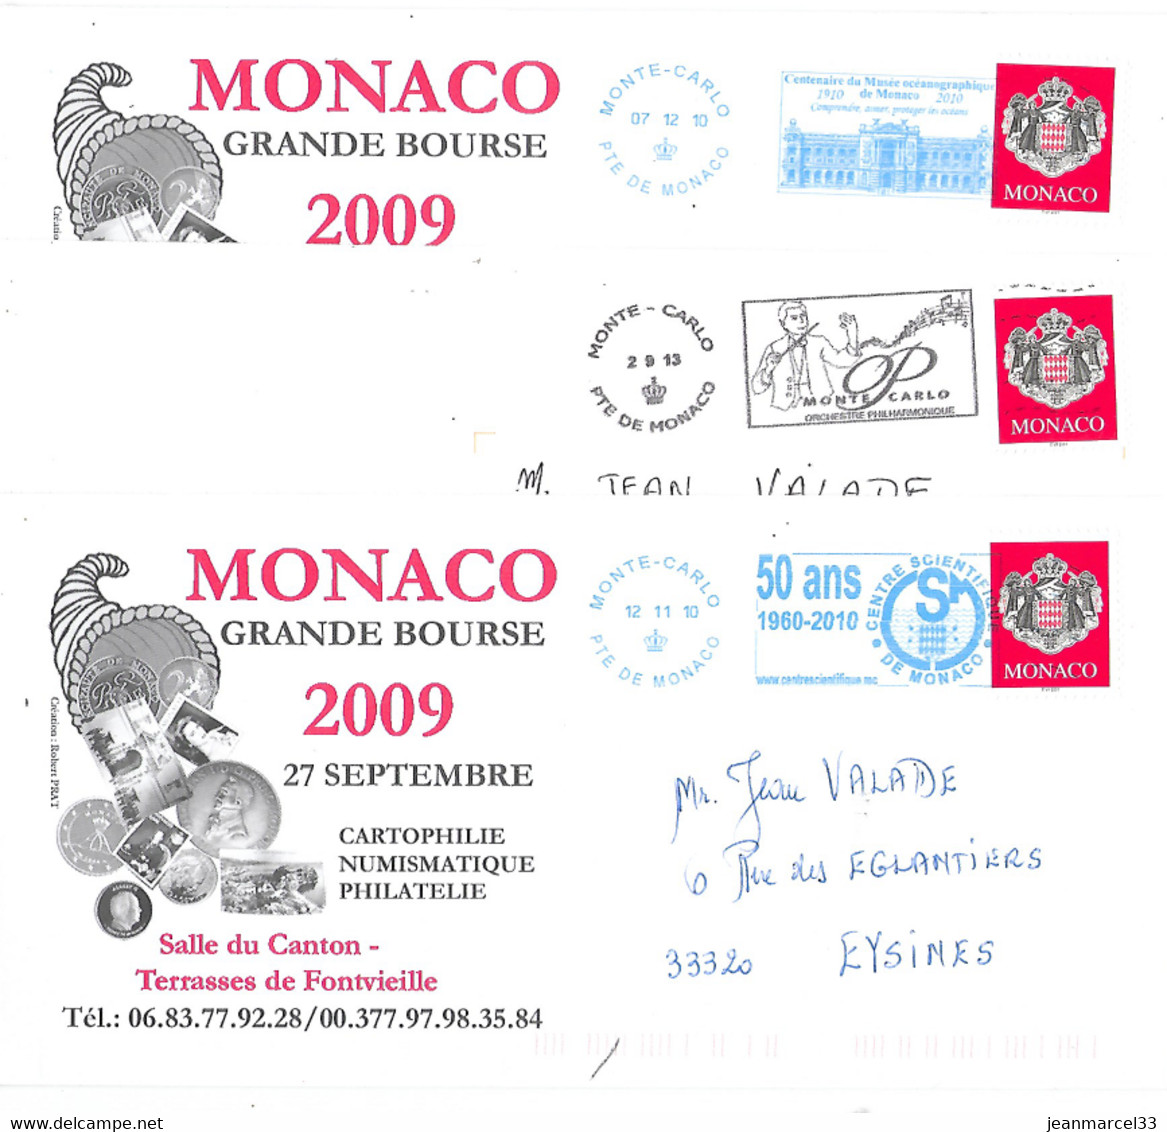 Monaco 3 Enveloppes Avec Flammes Du Type Néopost, Deux En Bleu Et Une En Noire - Macchine Per Obliterare (EMA)